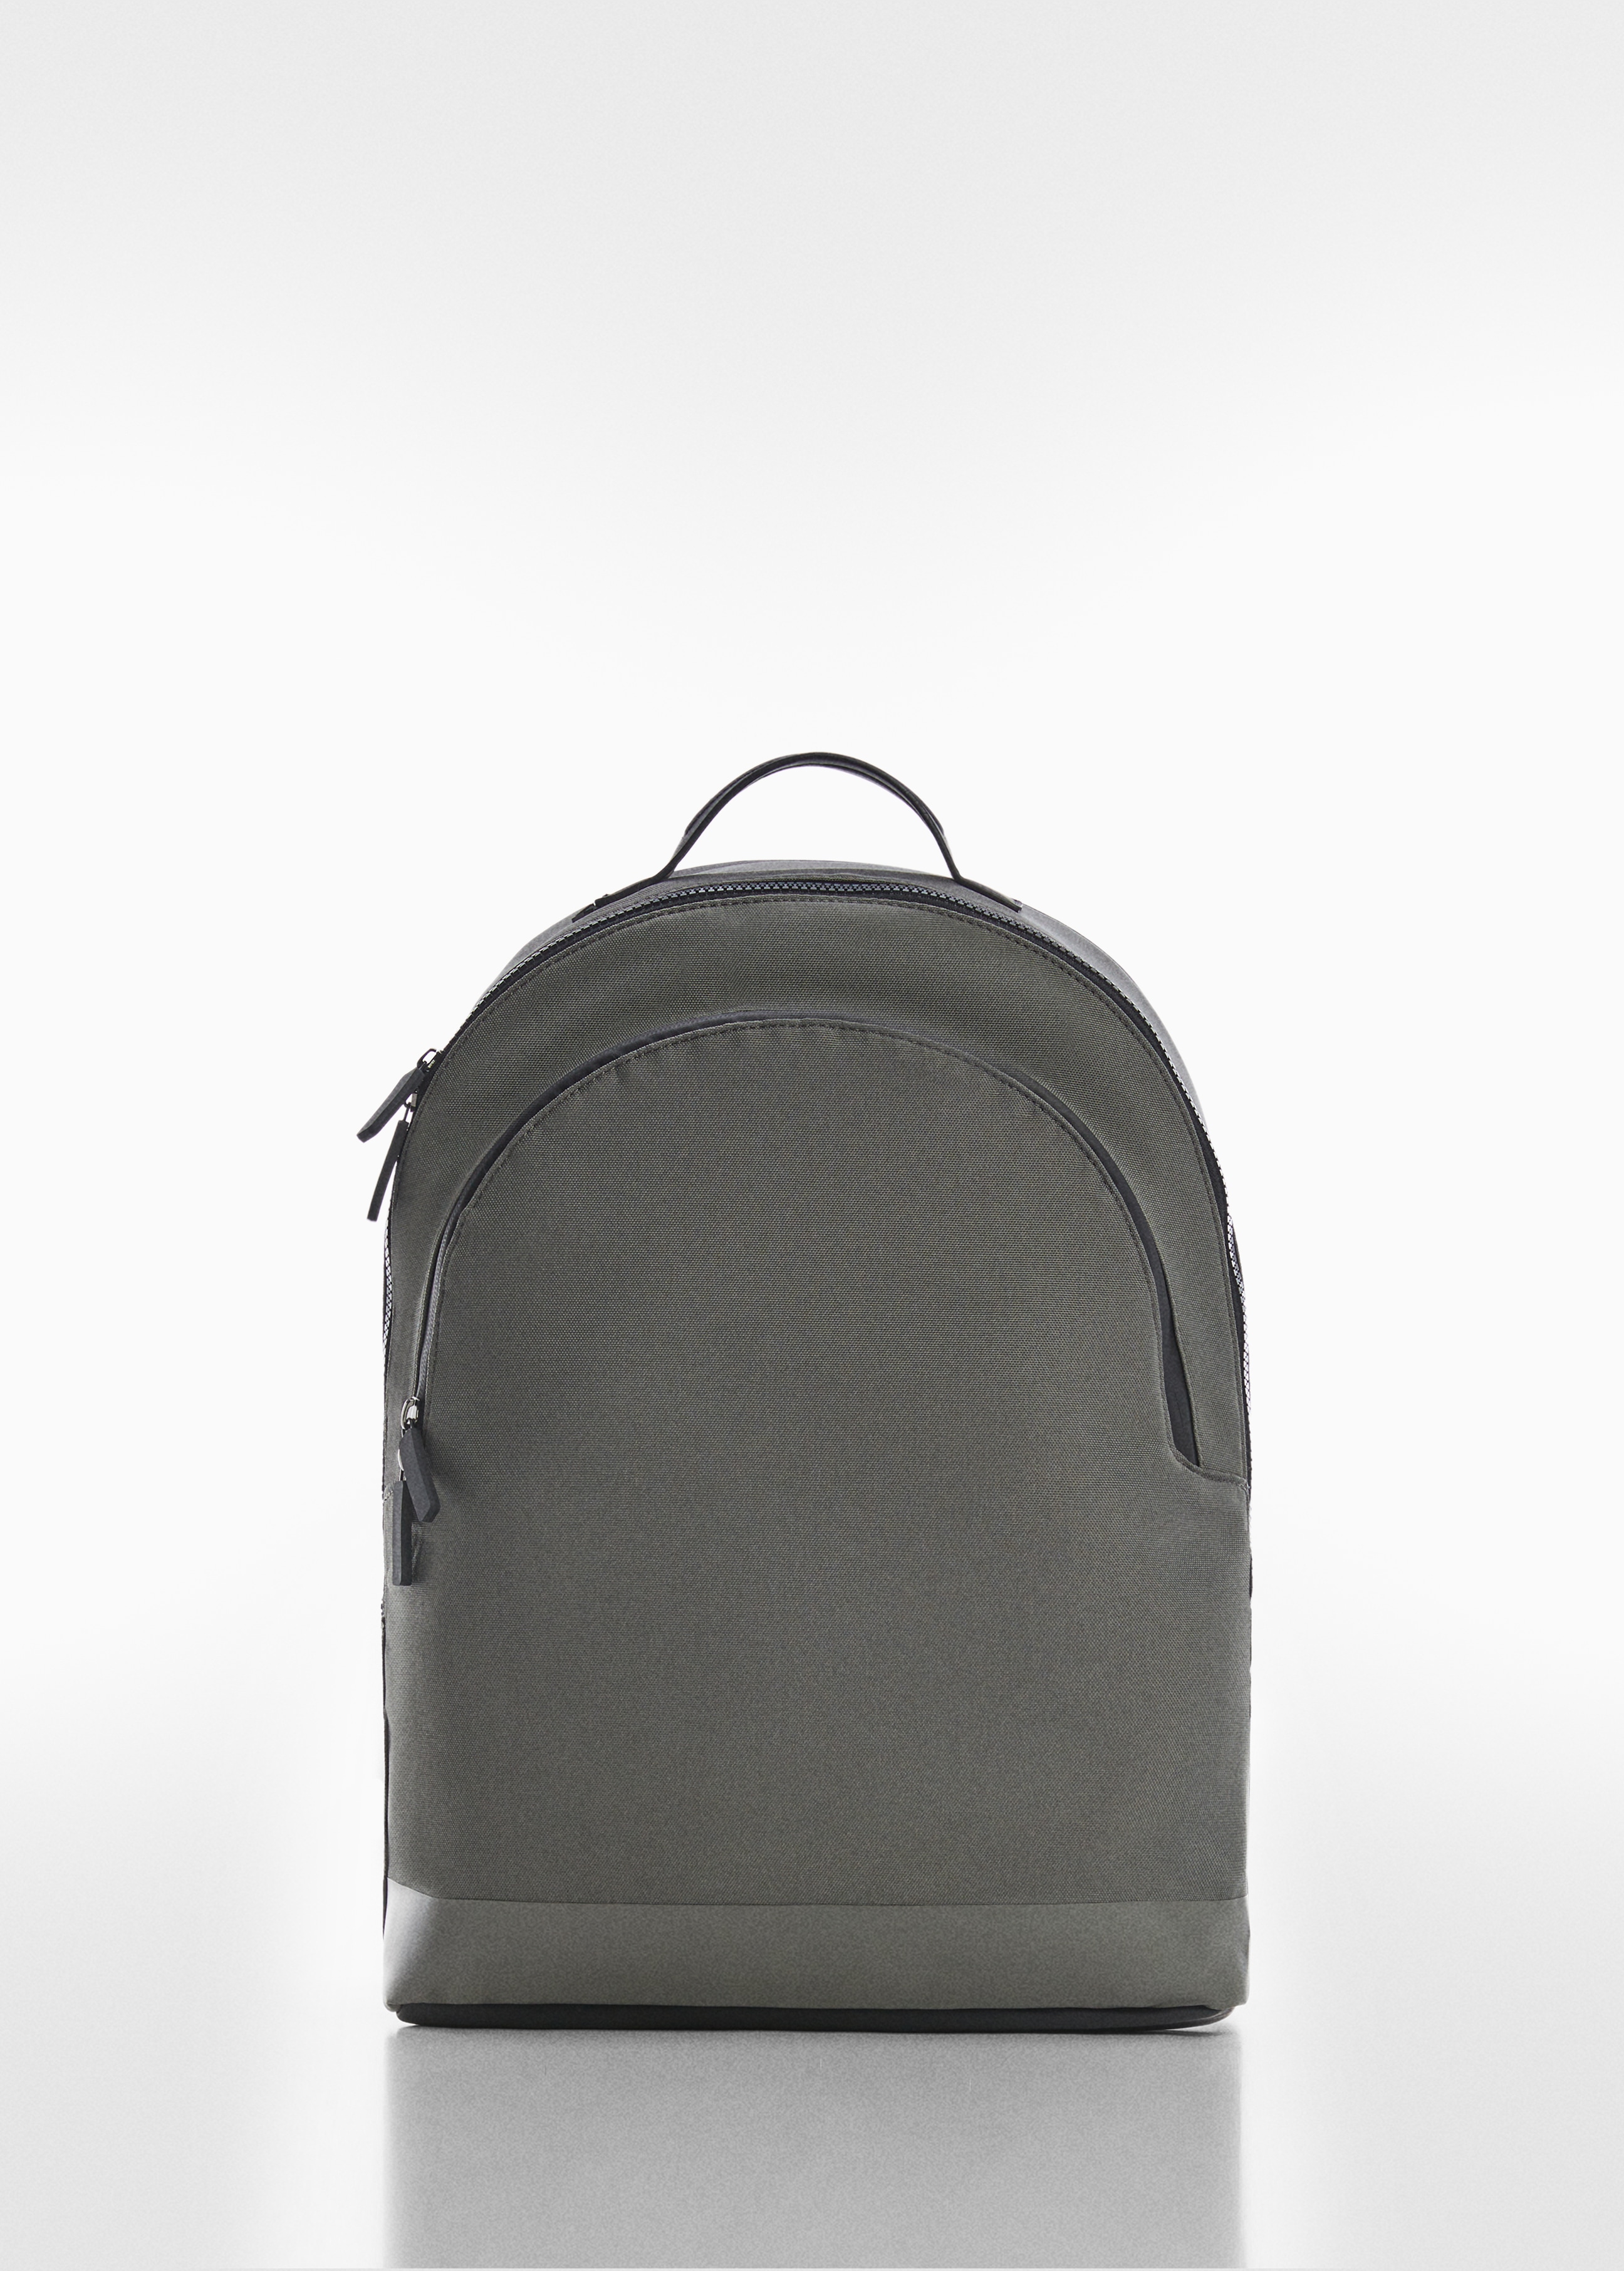 Vodoodbojni ruksak s džepovima - Artikl bez modela